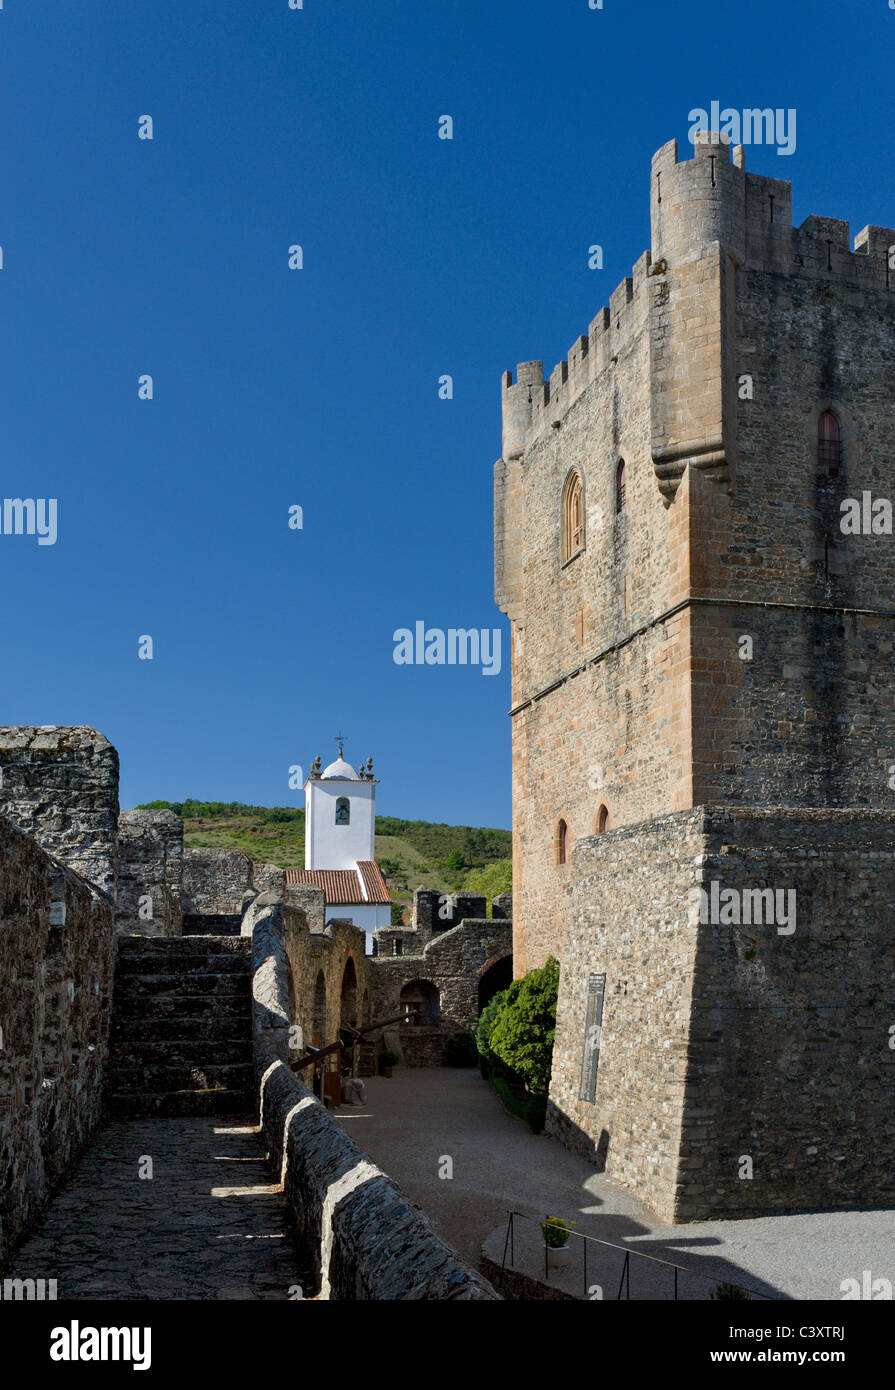 Le Portugal, Tras-os-Montes, Braganca castle Banque D'Images